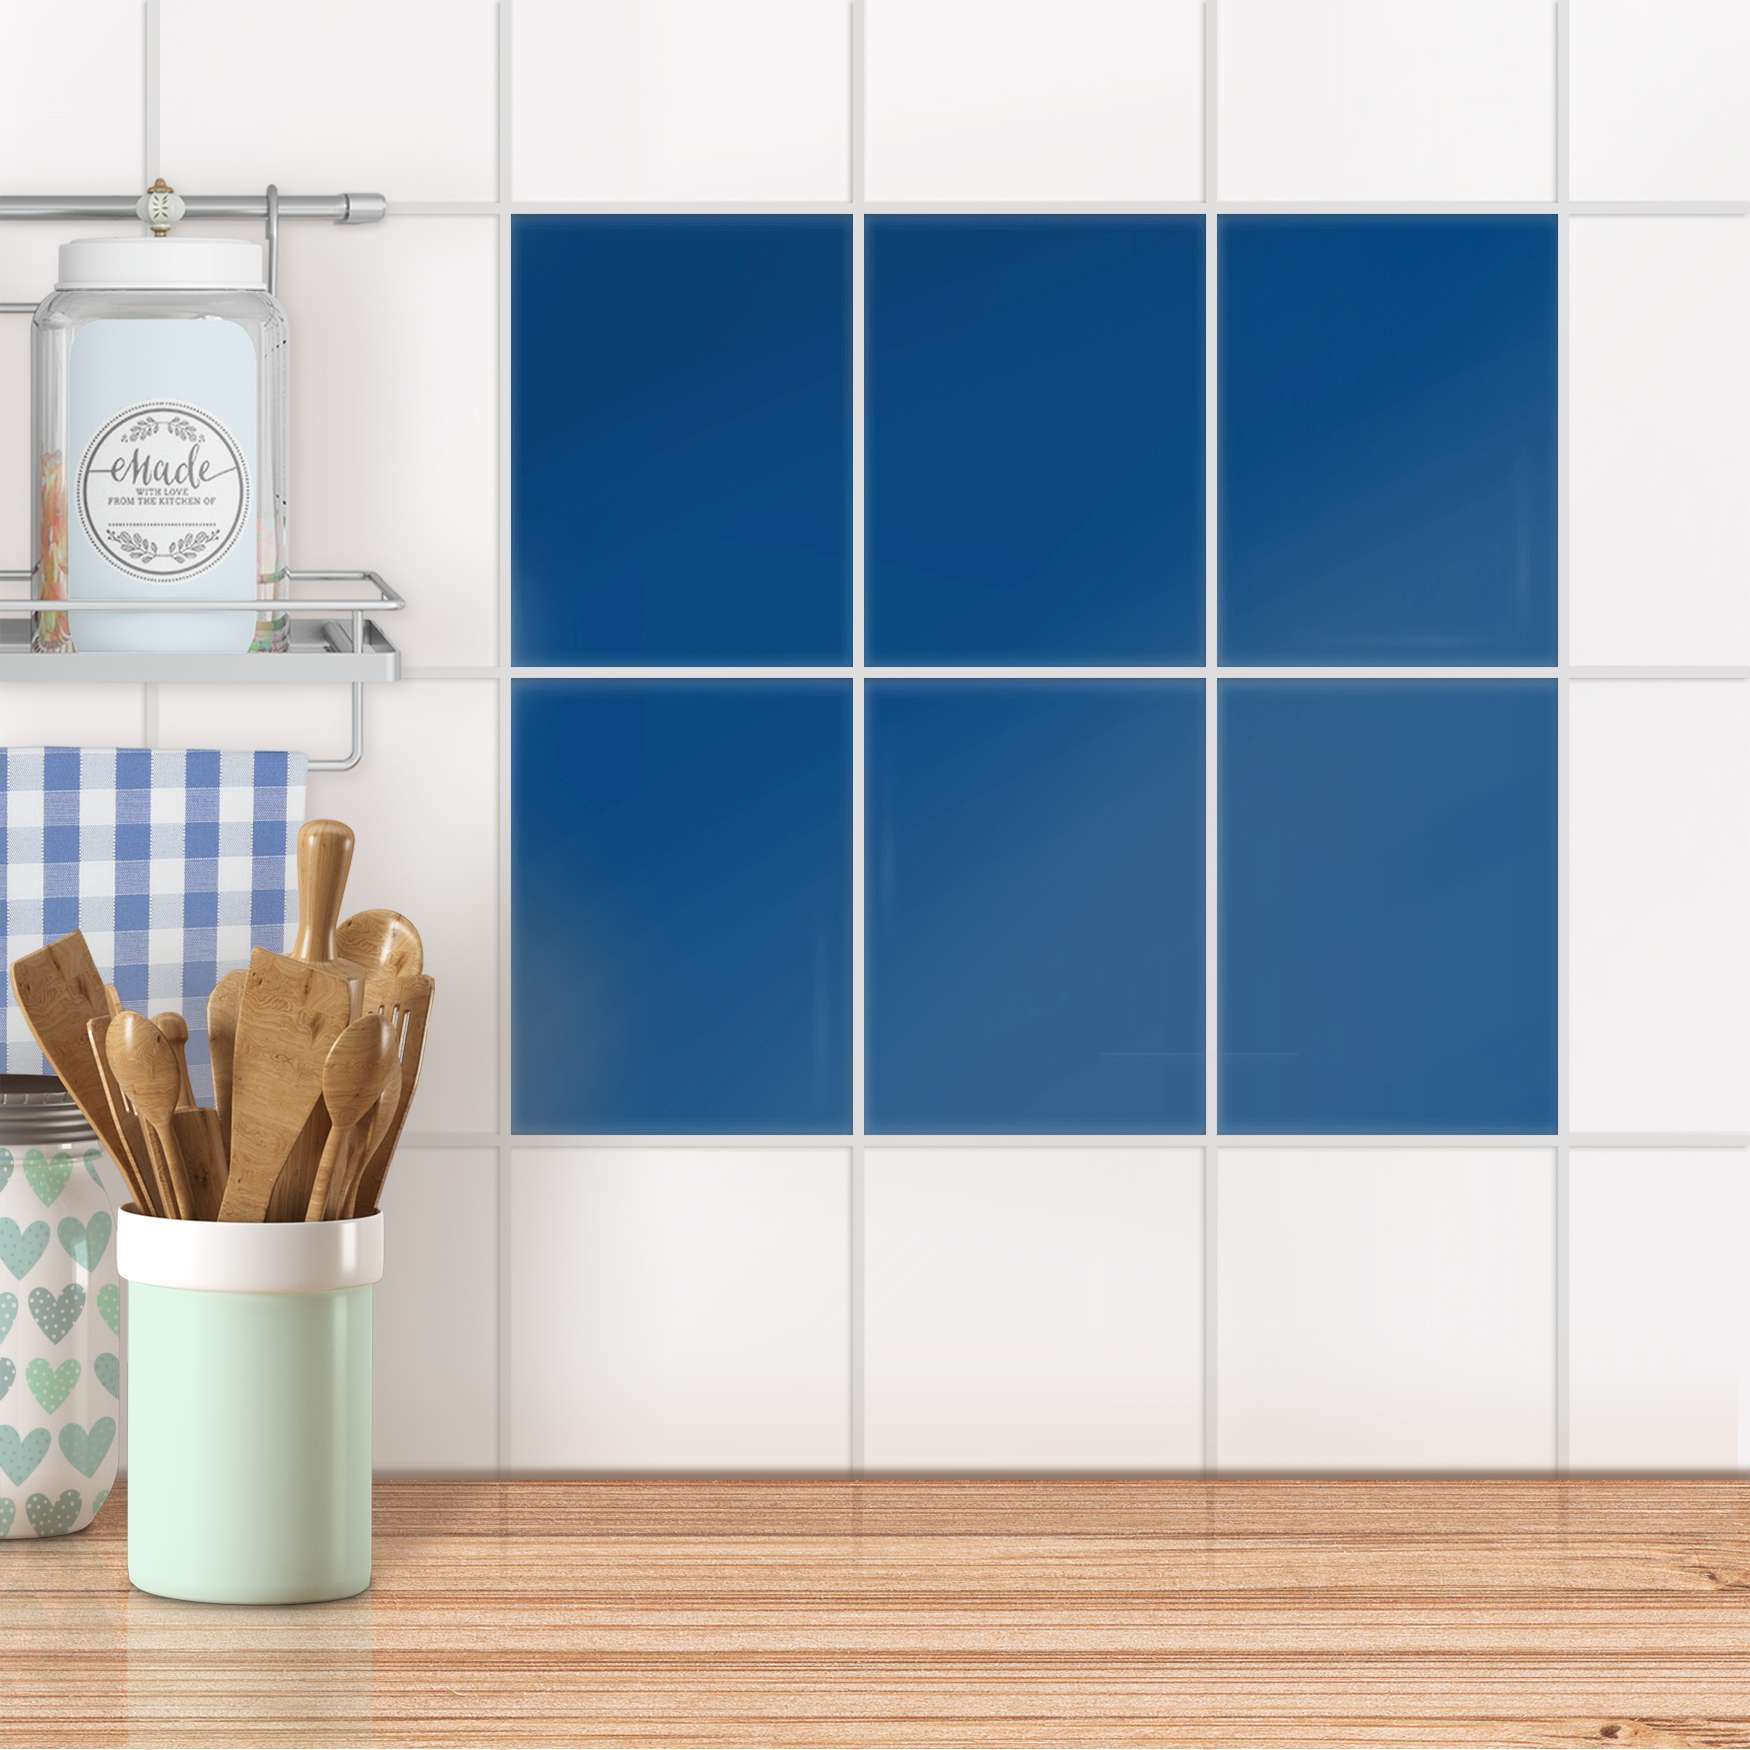 Fliesensticker unifarben für Küche & Bad - Design: Blau Dark 15x20 cm von creatisto